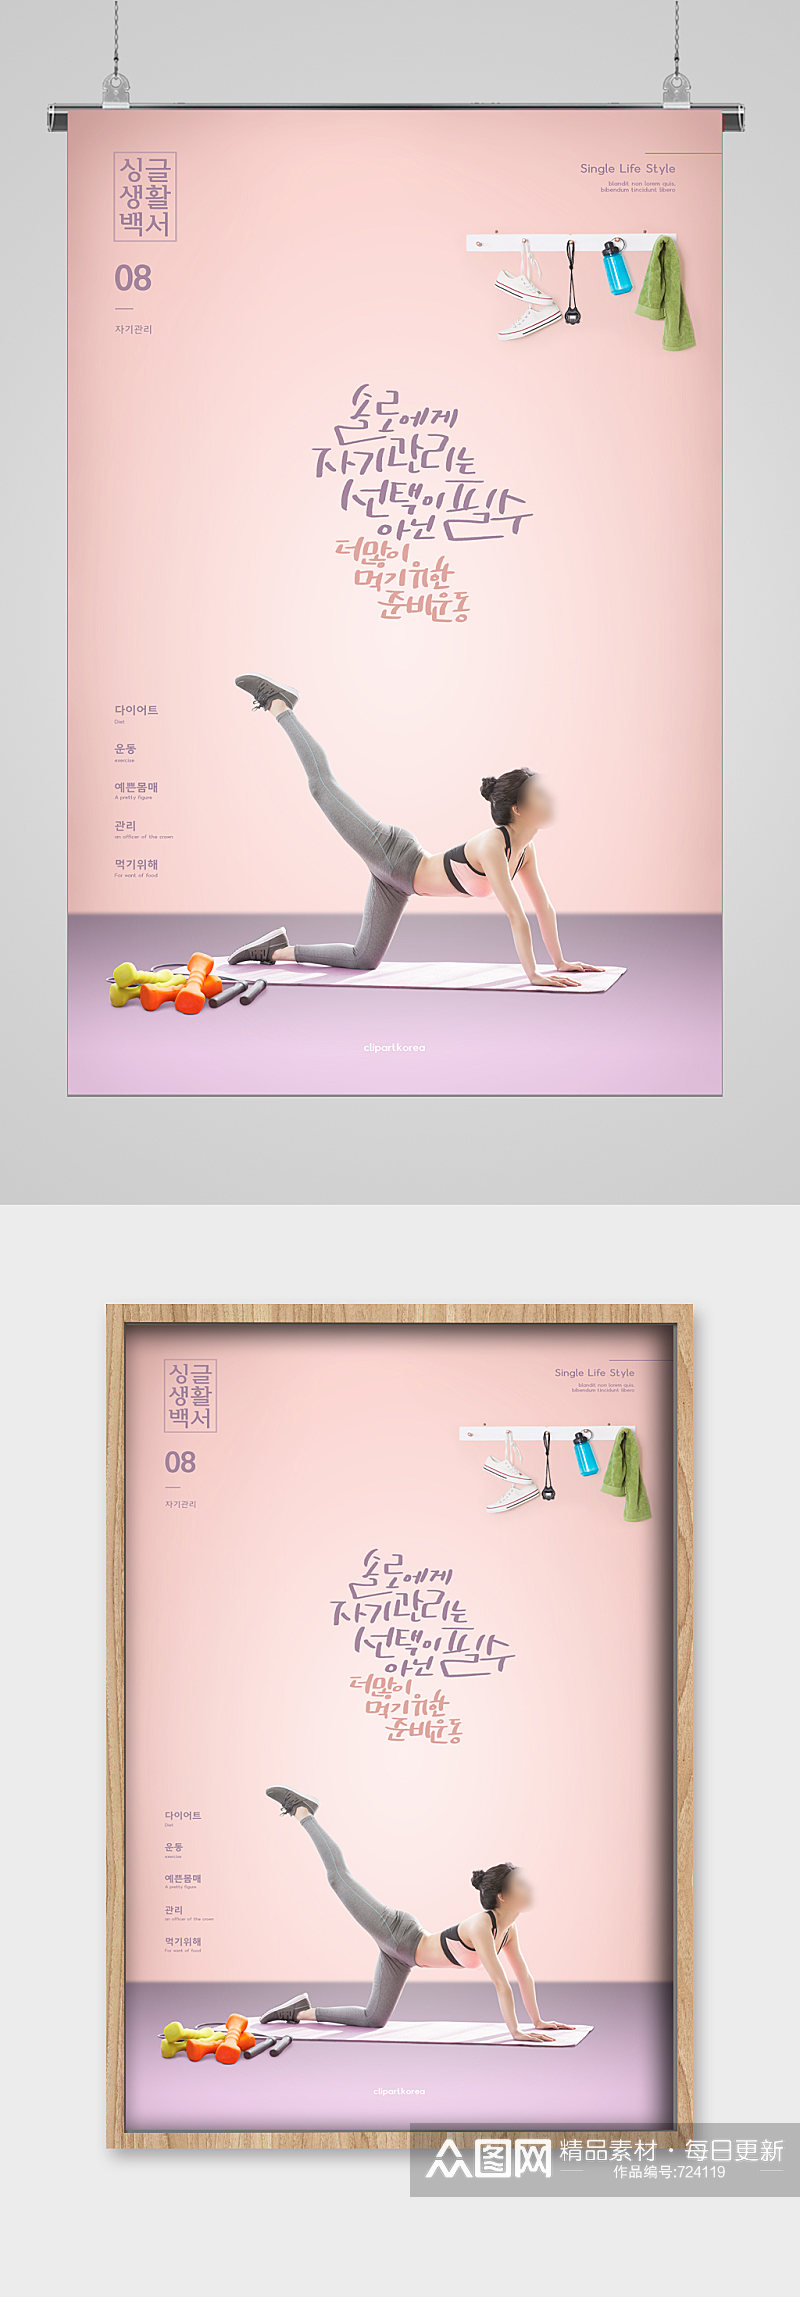 运动健身健康宣传海报瑜伽素材